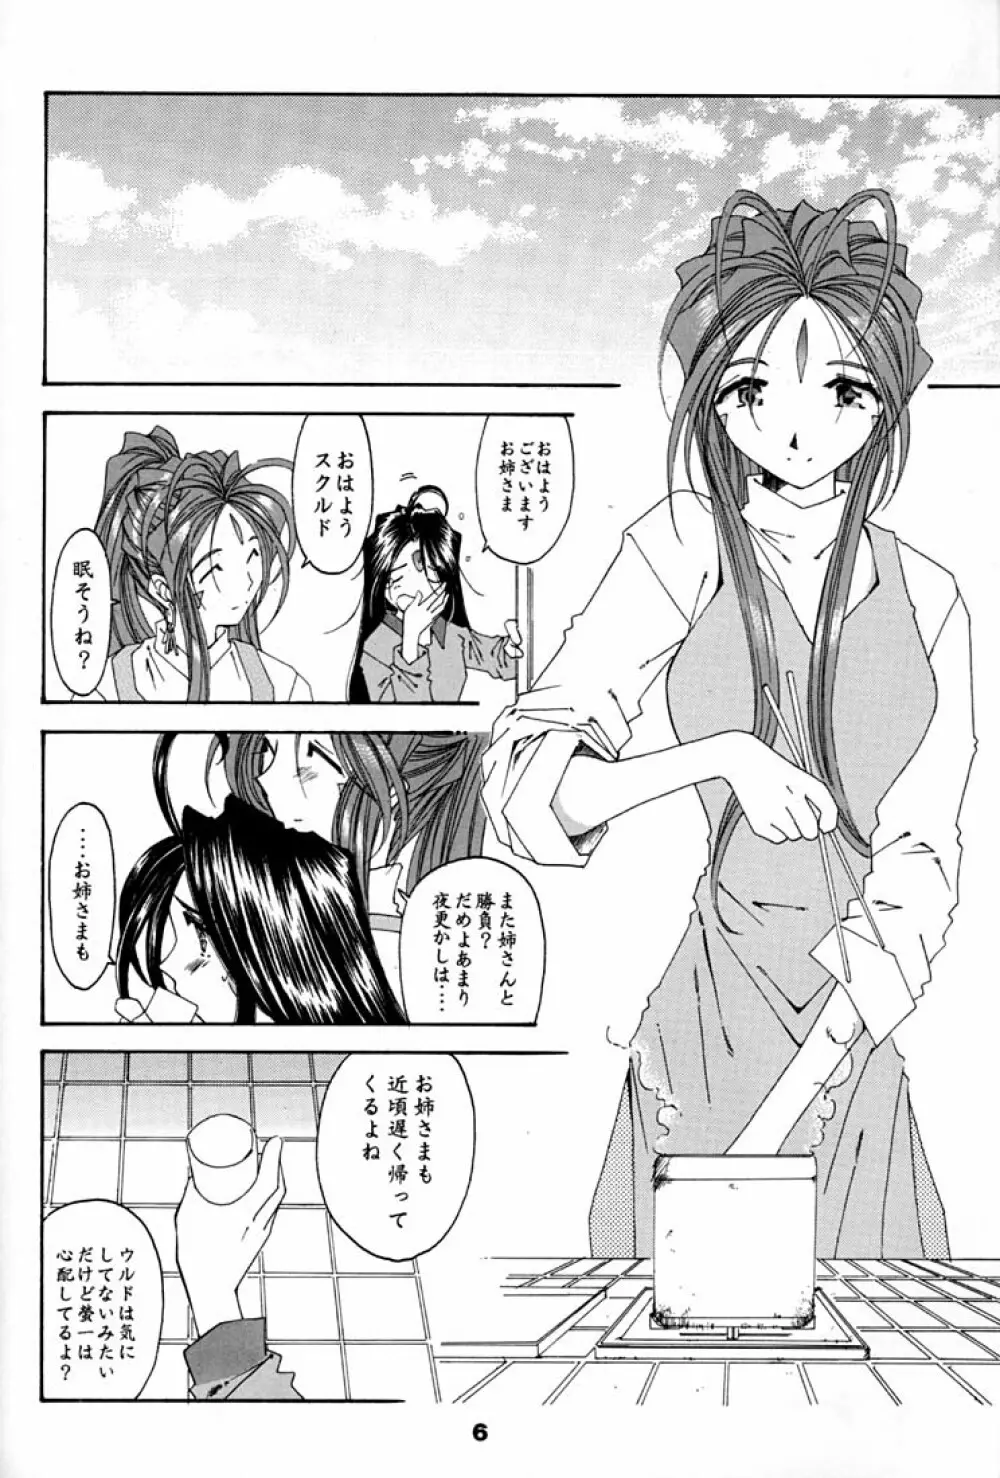 Fujishima Spirits 2 5ページ